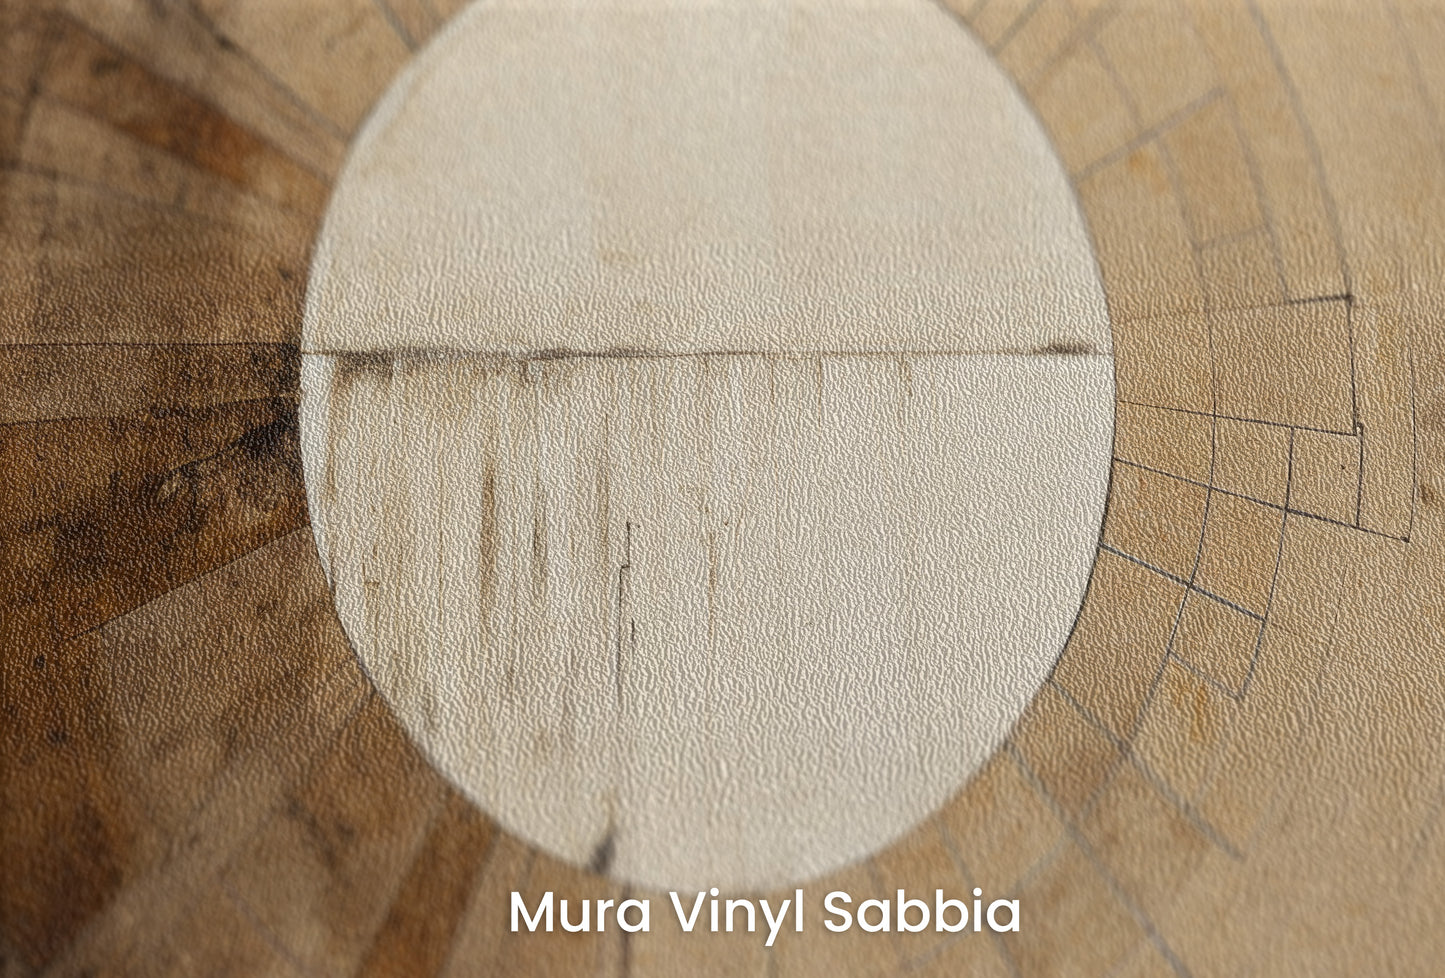 Zbliżenie na artystyczną fototapetę o nazwie ANCIENT SUNDIAL ILLUSION na podłożu Mura Vinyl Sabbia struktura grubego ziarna piasku.